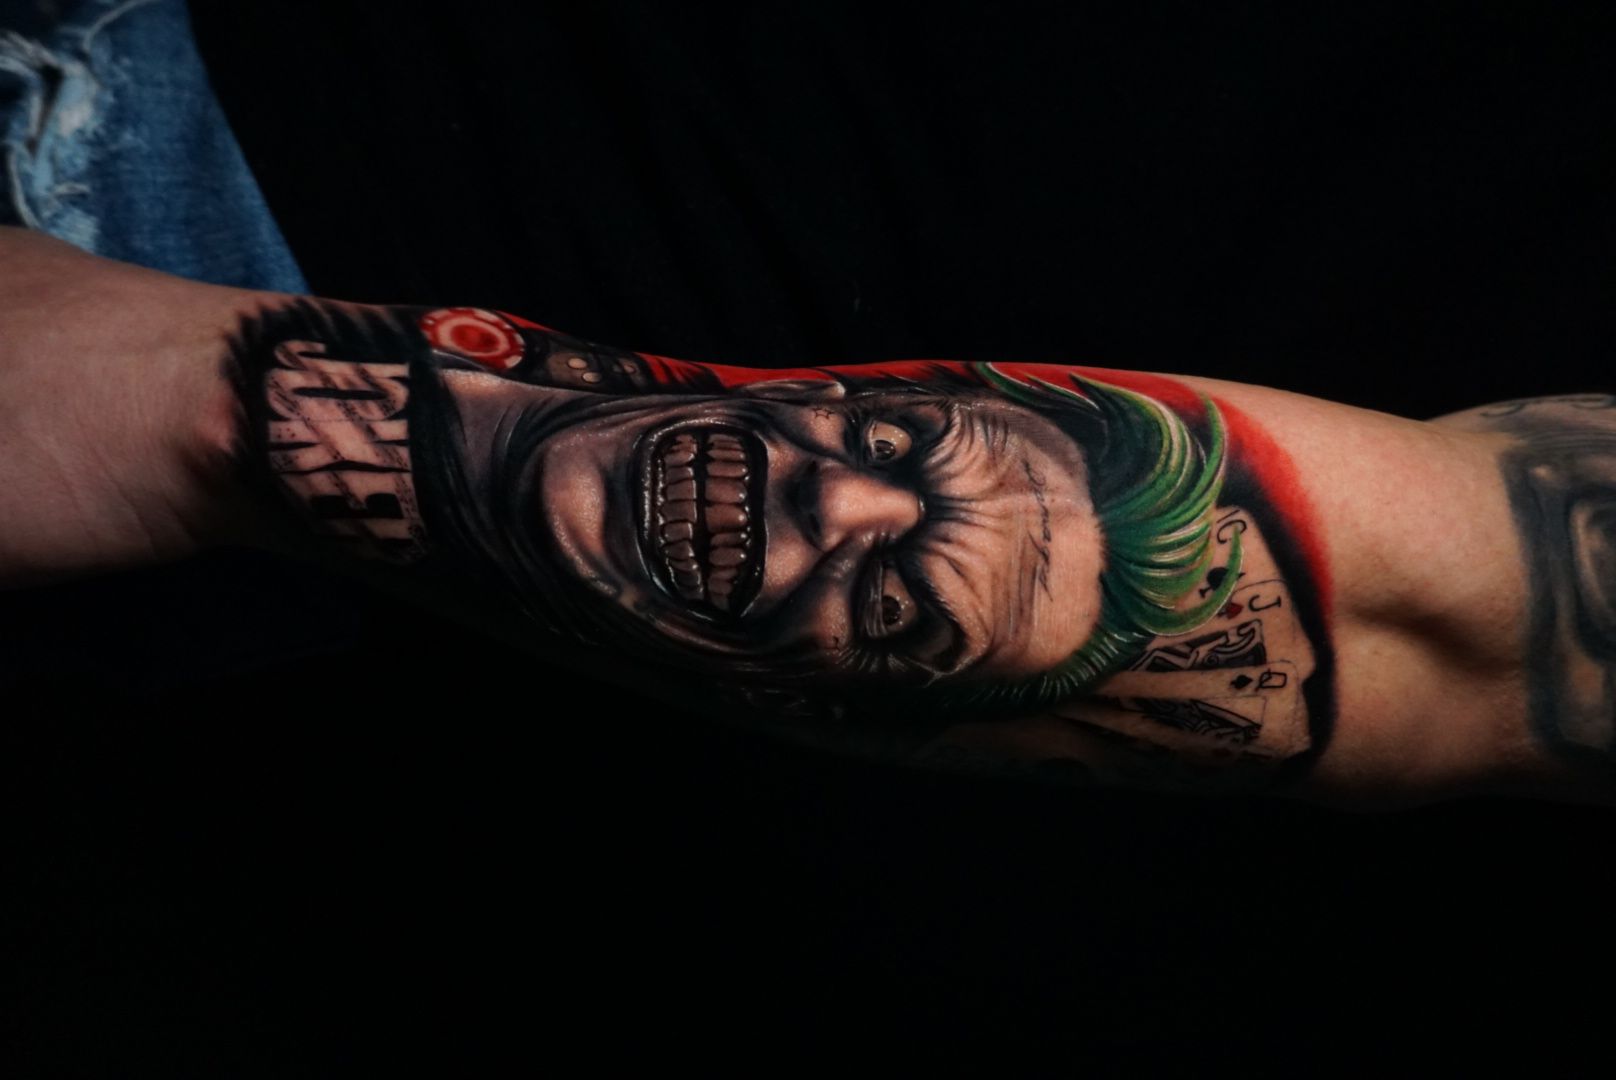 Heath Ledger Joker tattoo by AntoniettaArnoneArts on DeviantArt